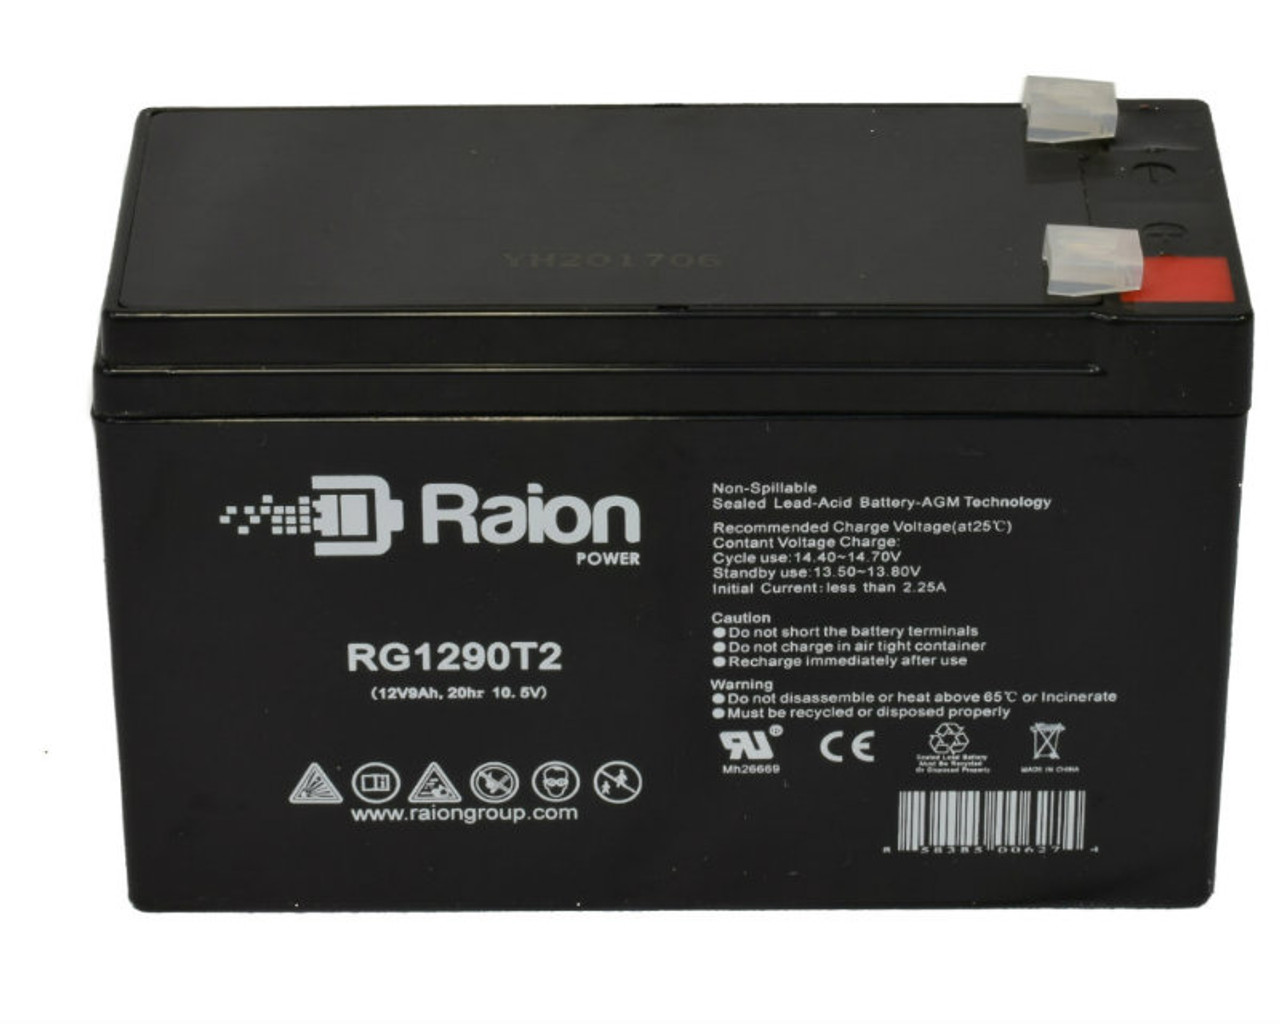 Raion Power RG1290T2 12V 9Ah Lead Acid Battery for IBT Technologies BT8-12-F2